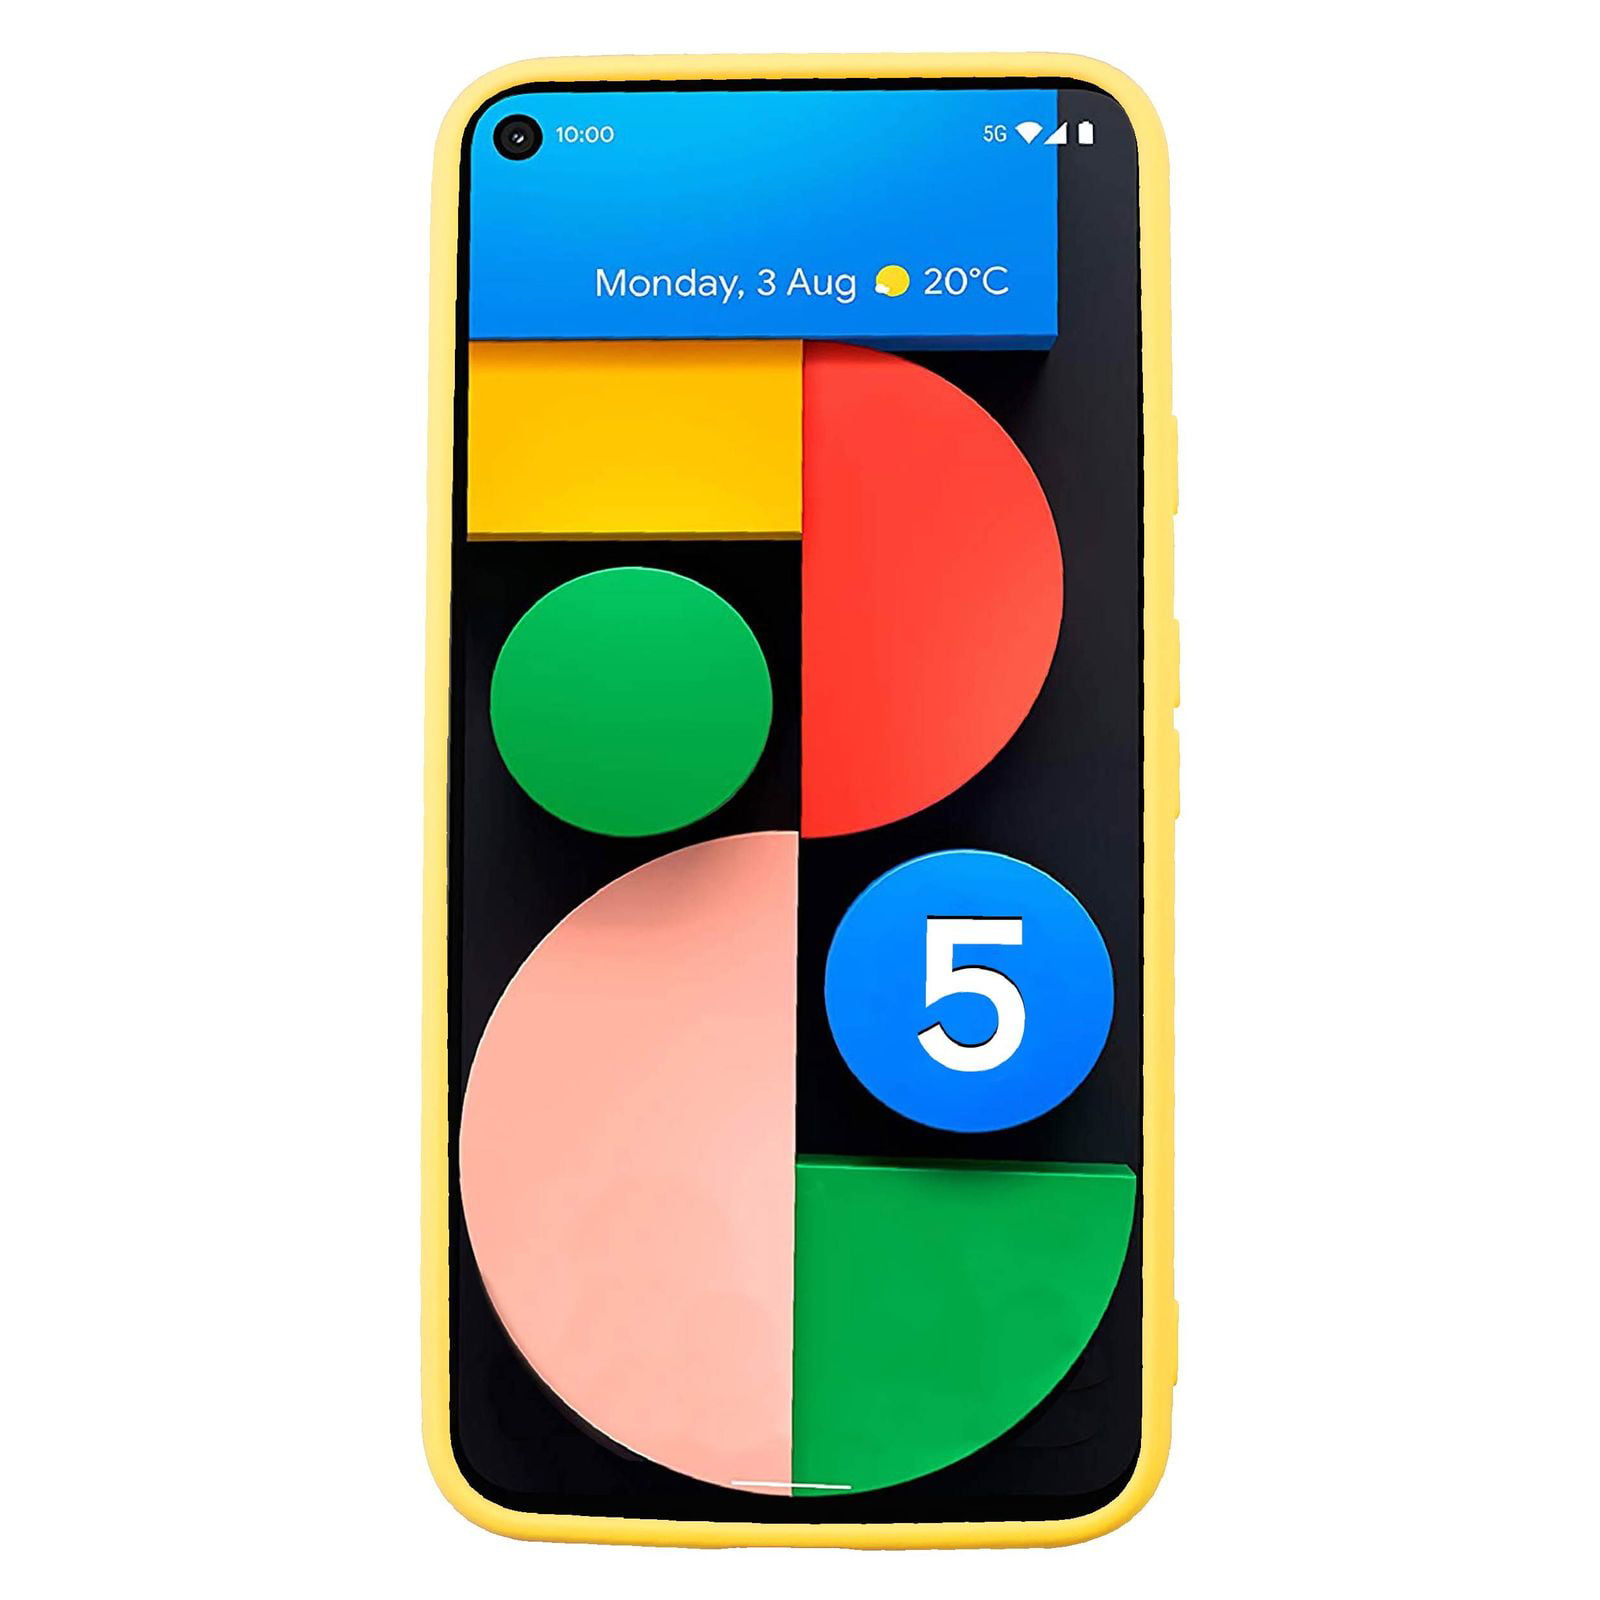 Google Pixel 5 case không chỉ bảo vệ chiếc điện thoại yêu quý của bạn mà còn tạo nên phong cách độc đáo. Với nhiều lựa chọn màu sắc và kiểu dáng, bạn có thể tùy chỉnh để tạo nên phong cách riêng cho mình. Hãy mua ngay một chiếc case chất lượng cao để bảo vệ điện thoại của bạn trên mọi nẻo đường.